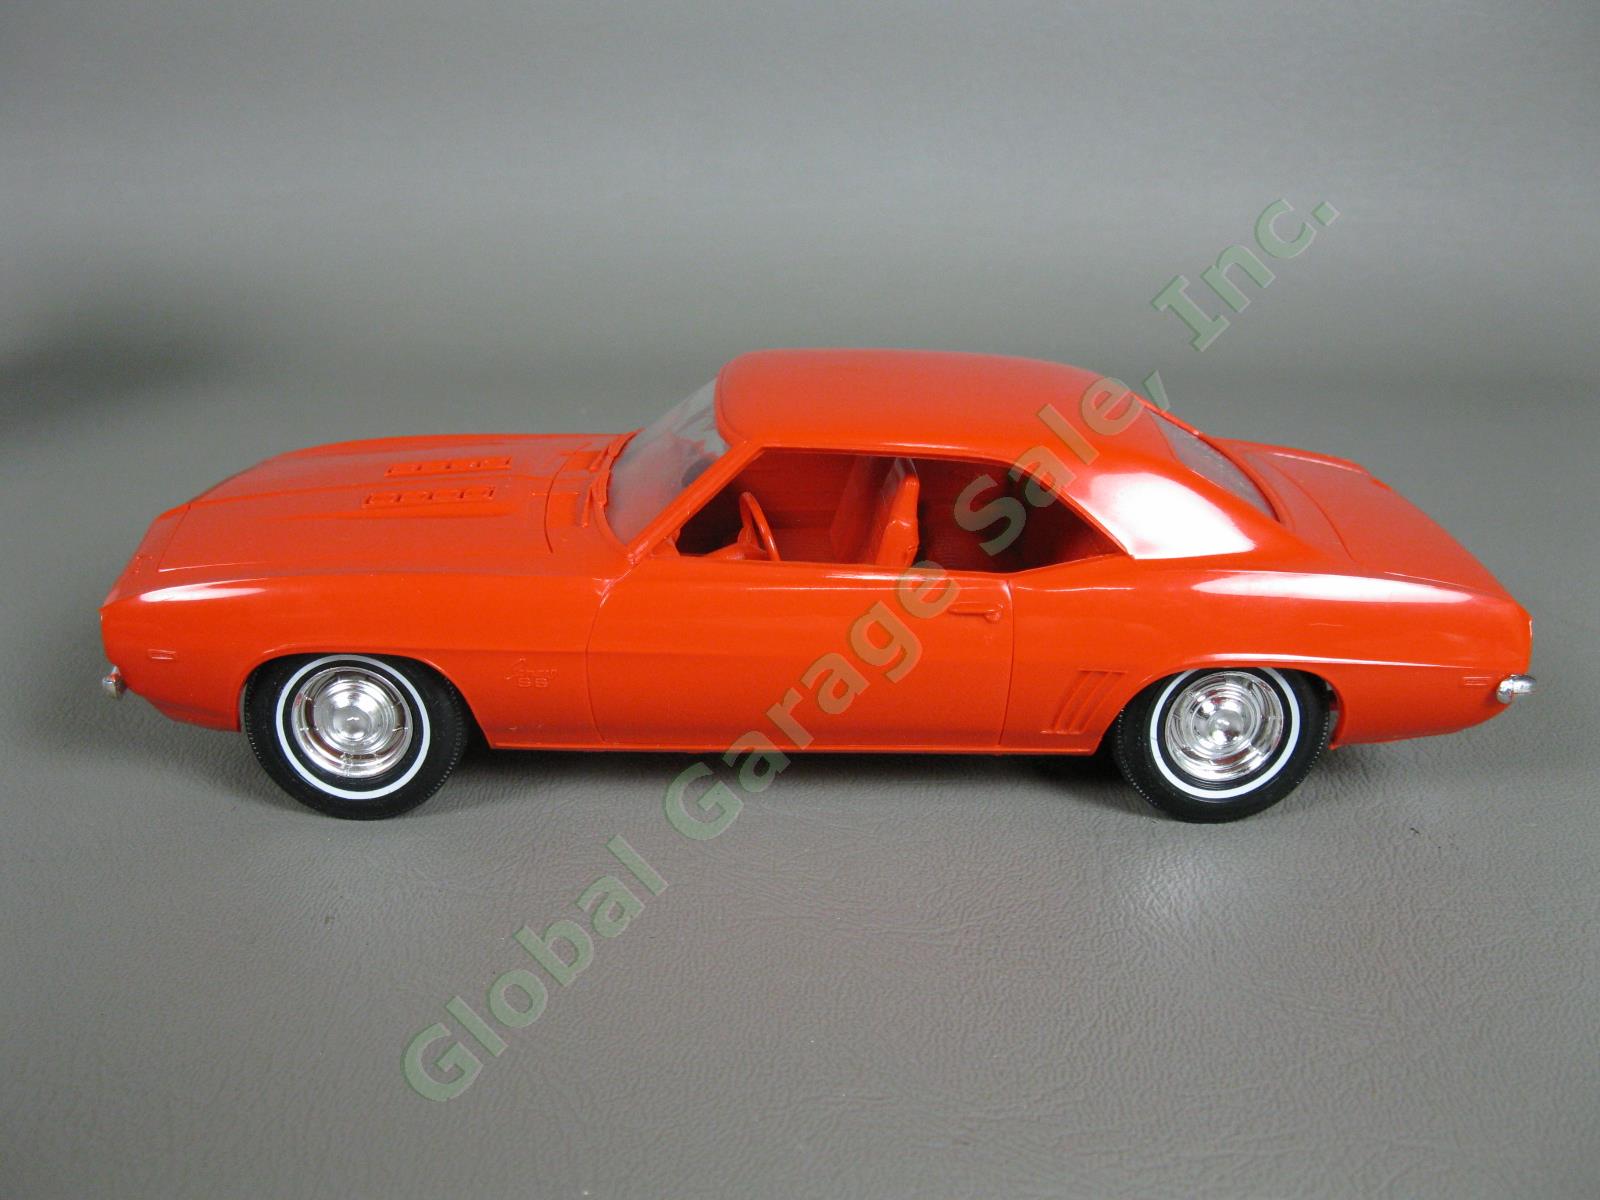 ORIGINAL Vintage 1969 Chevrolet Camaro Hugger Orange Dealer Promo Model Car NR 1